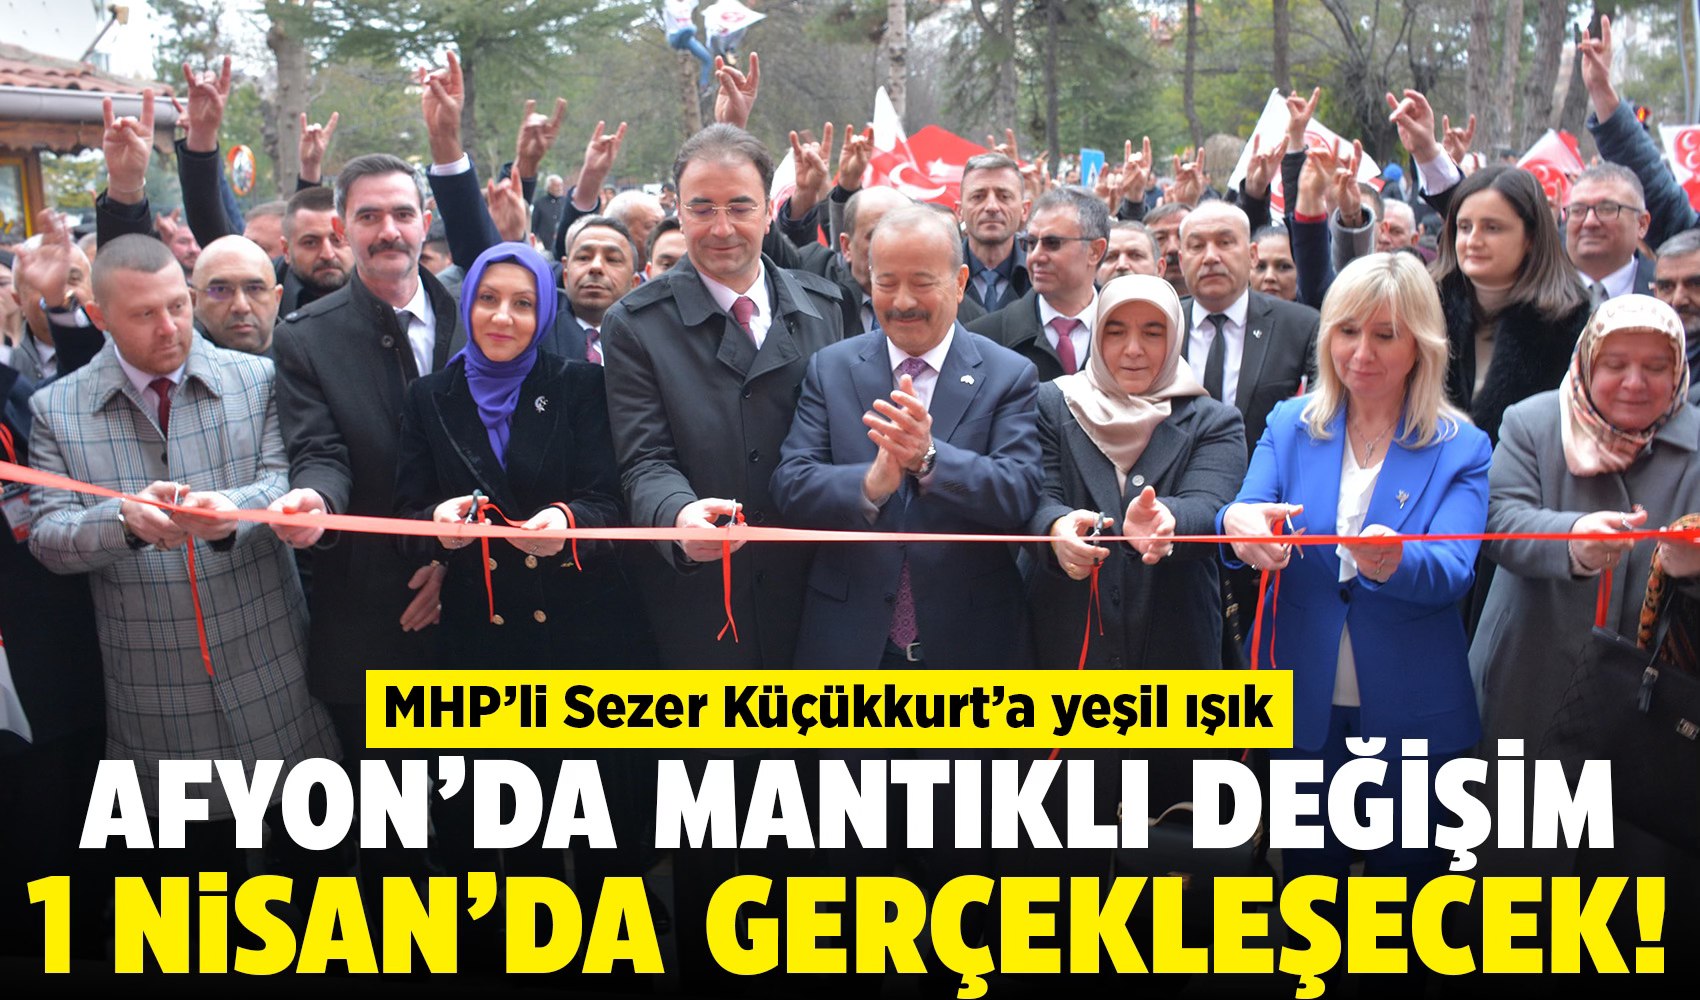 MHP Afyonkarahisar İl Başkanı Sezer Küçükkurt, bölge halkının desteğini kazanıyor.